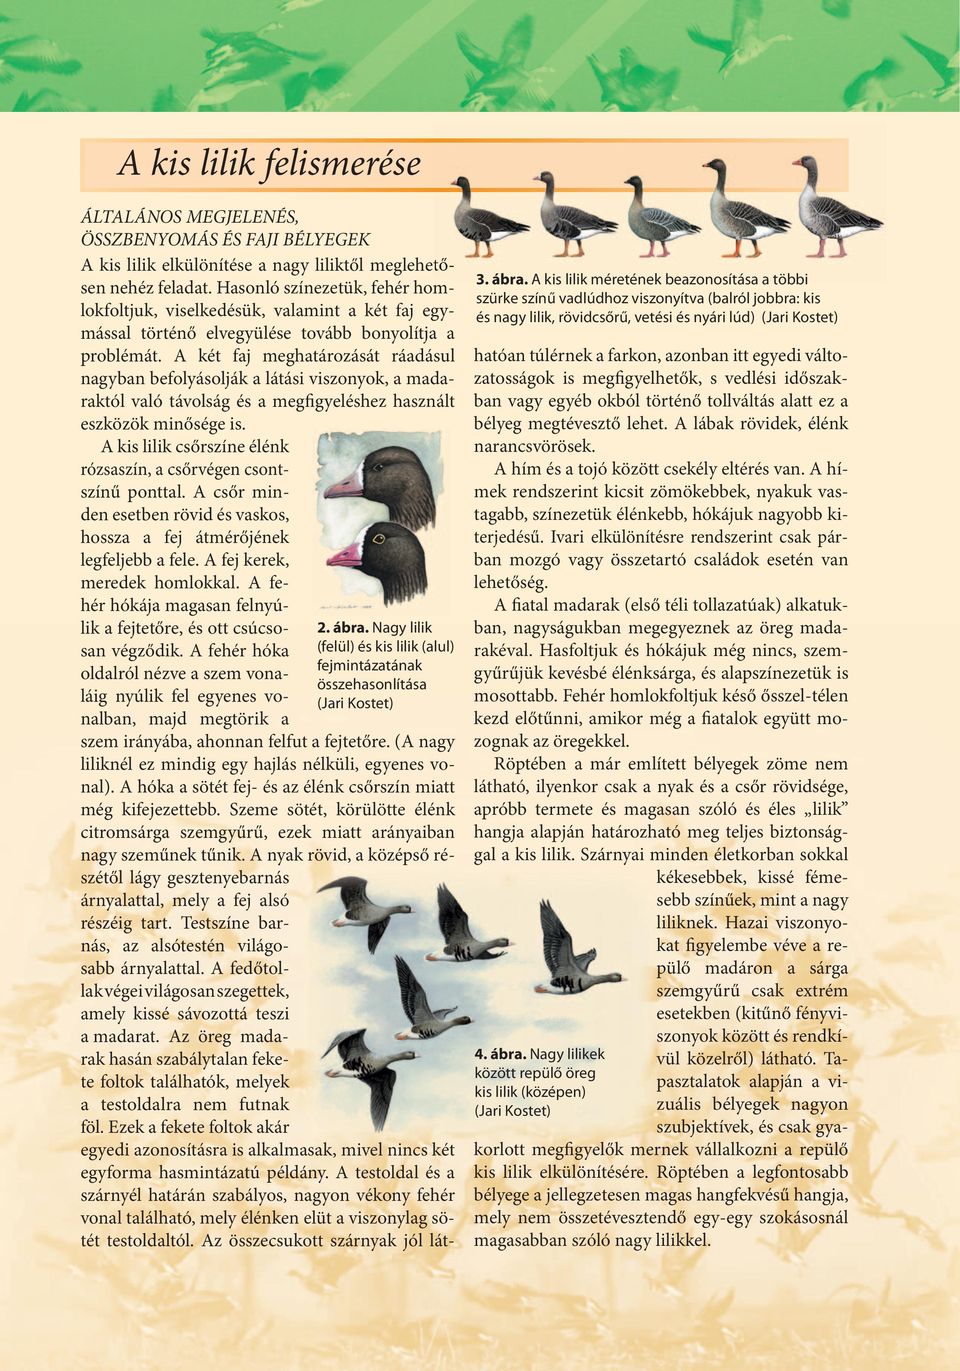 A két faj meghatározását ráadásul nagyban befolyásolják a látási viszonyok, a madaraktól való távolság és a megfigyeléshez használt eszközök minősége is.